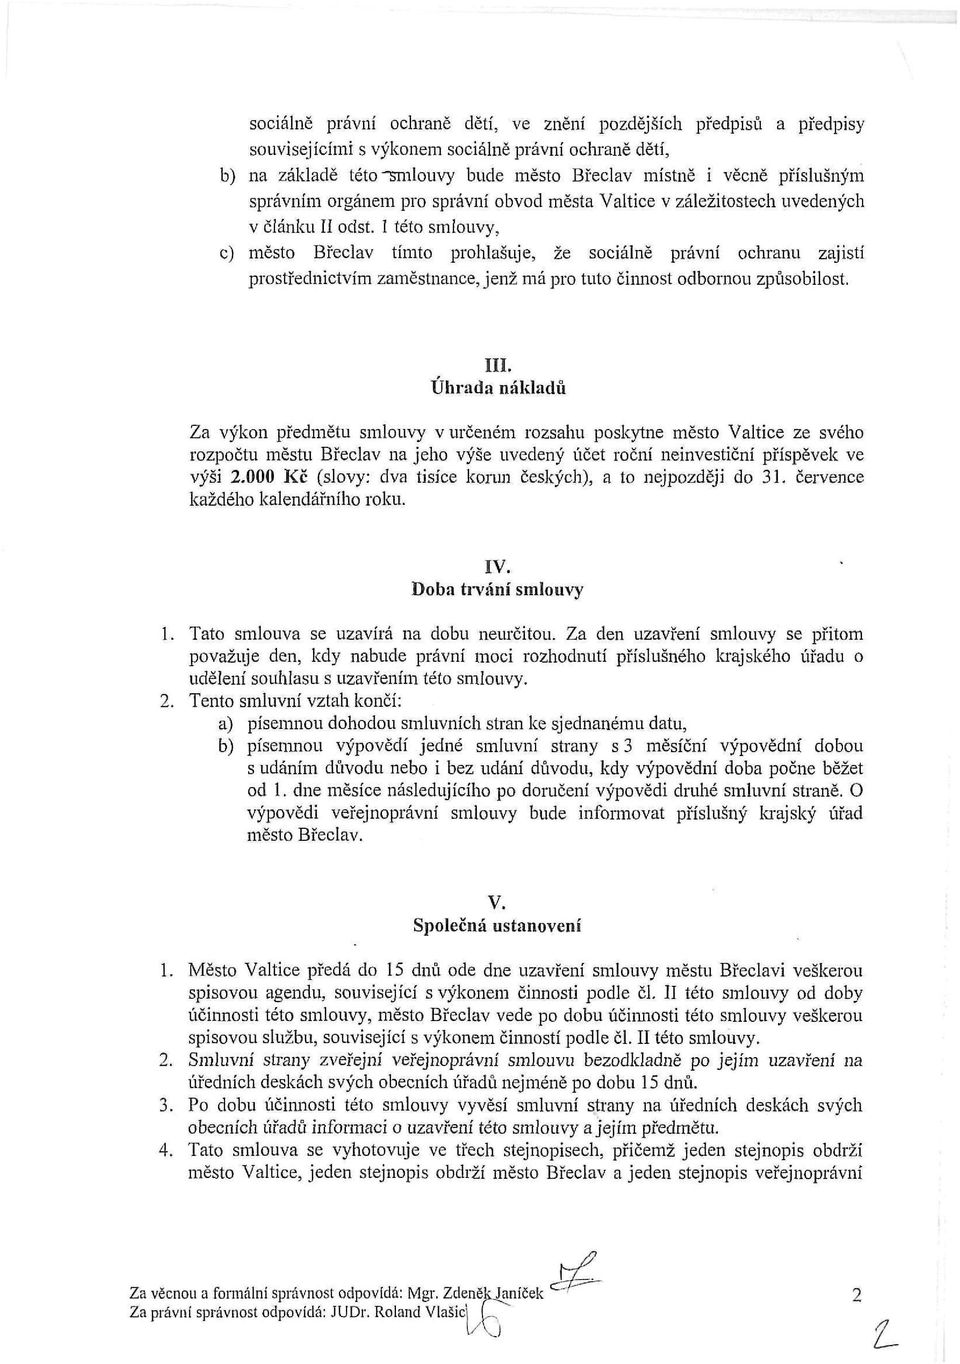 1 této smlouvy, c) město Břeclav tímto prohlašuje, že sociálně právní ochranu zajistí prostřednictvím zaměstnance, jenž má pro tuto činnost odbornou způsobilost. III.